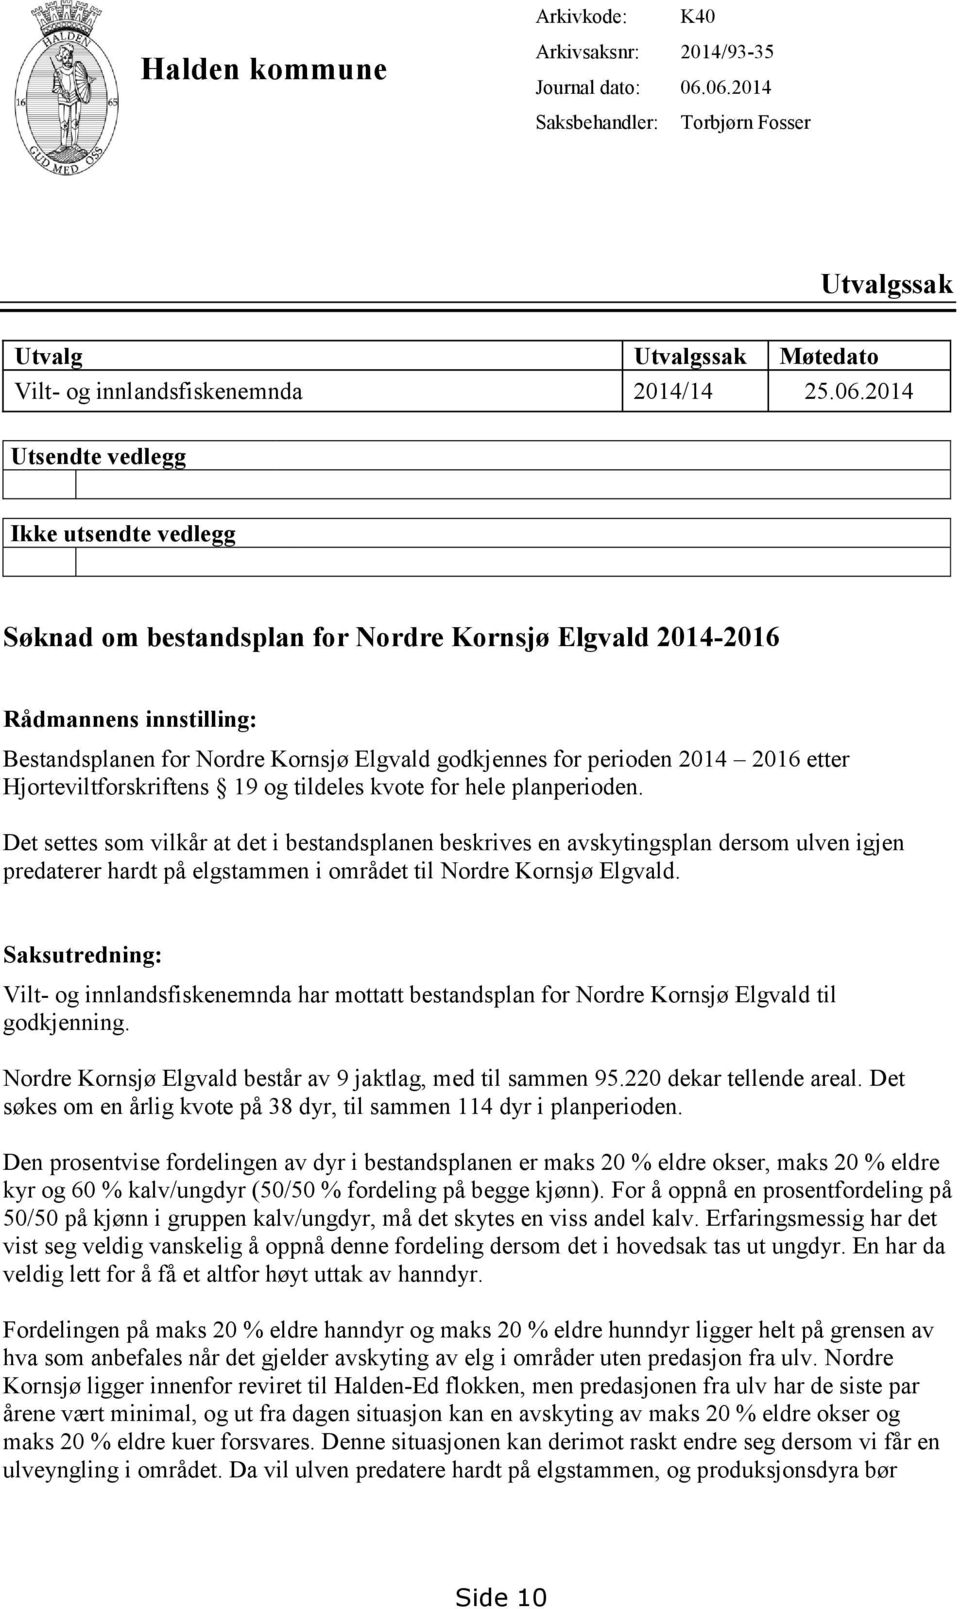 2014-2016 Rådmannens innstilling: Bestandsplanen for Nordre Kornsjø Elgvald godkjennes for perioden 2014 2016 etter Hjorteviltforskriftens 19 og tildeles kvote for hele planperioden.